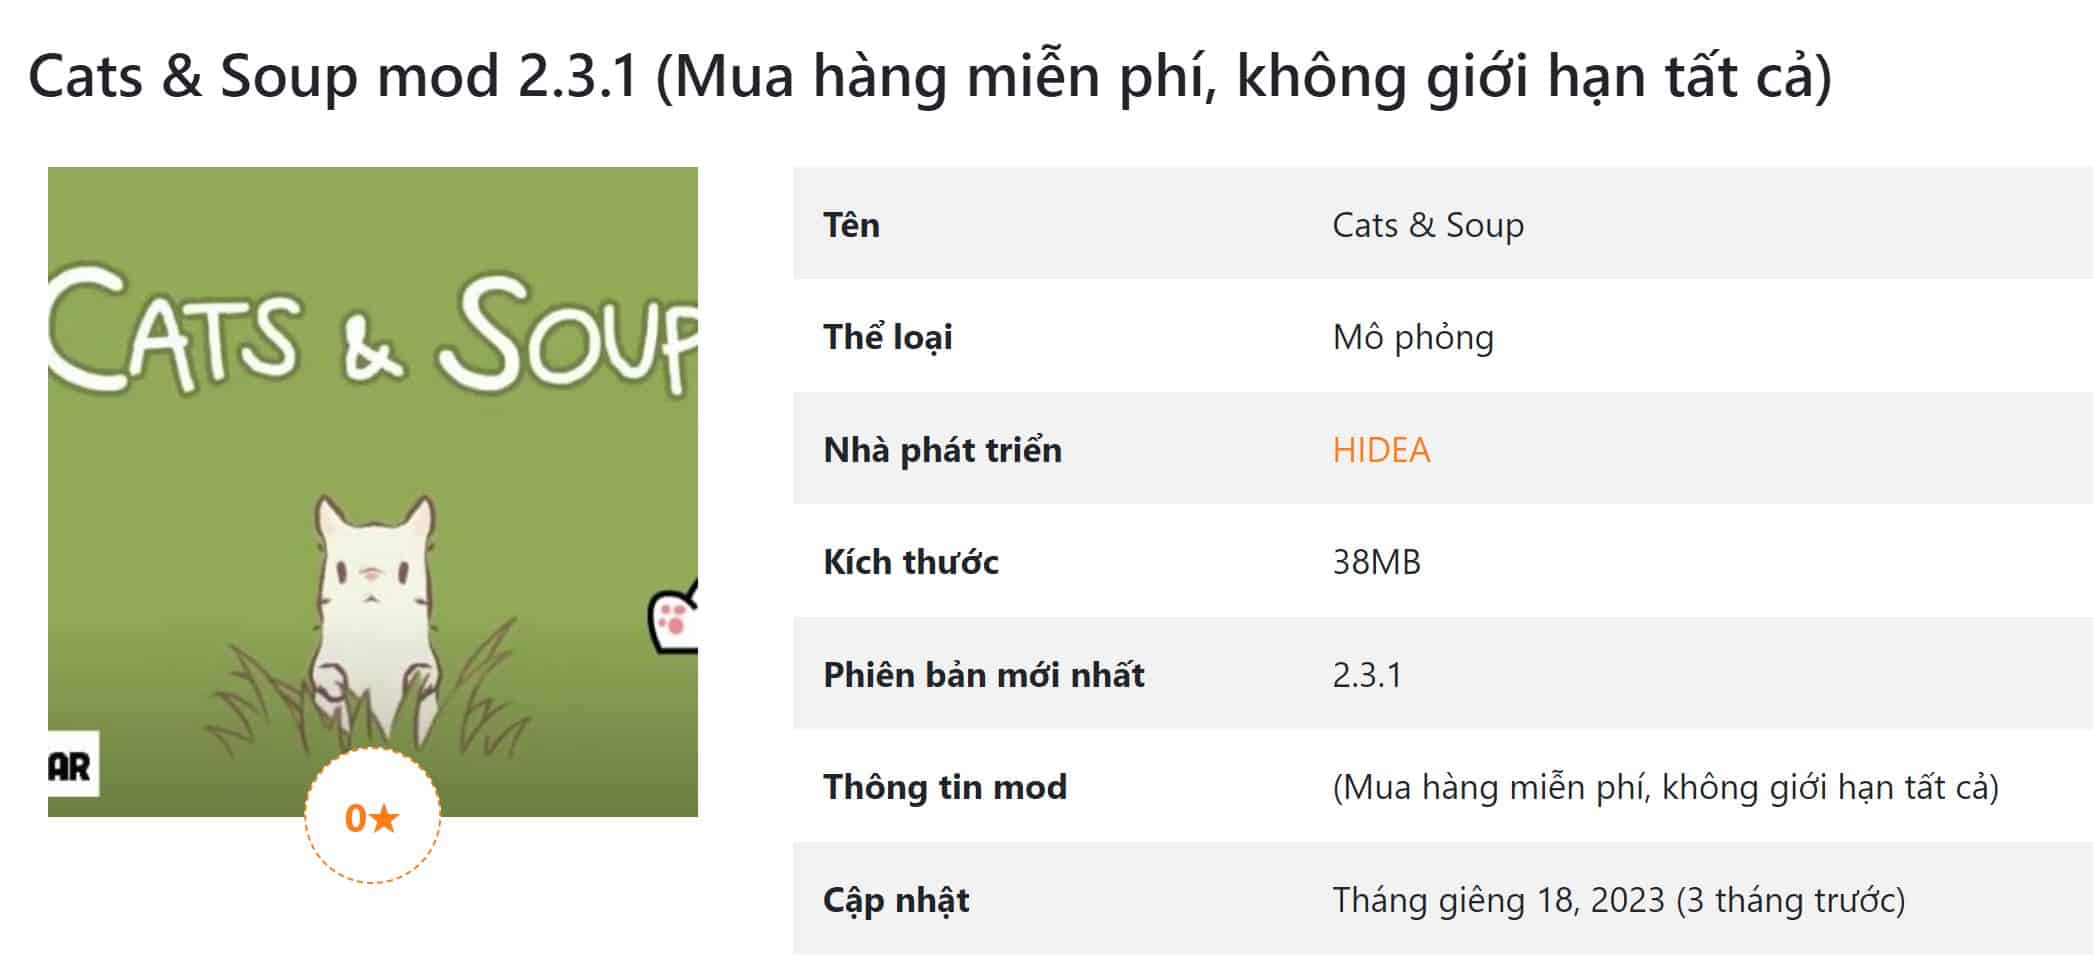 Cats & Soup mod 2.3.1